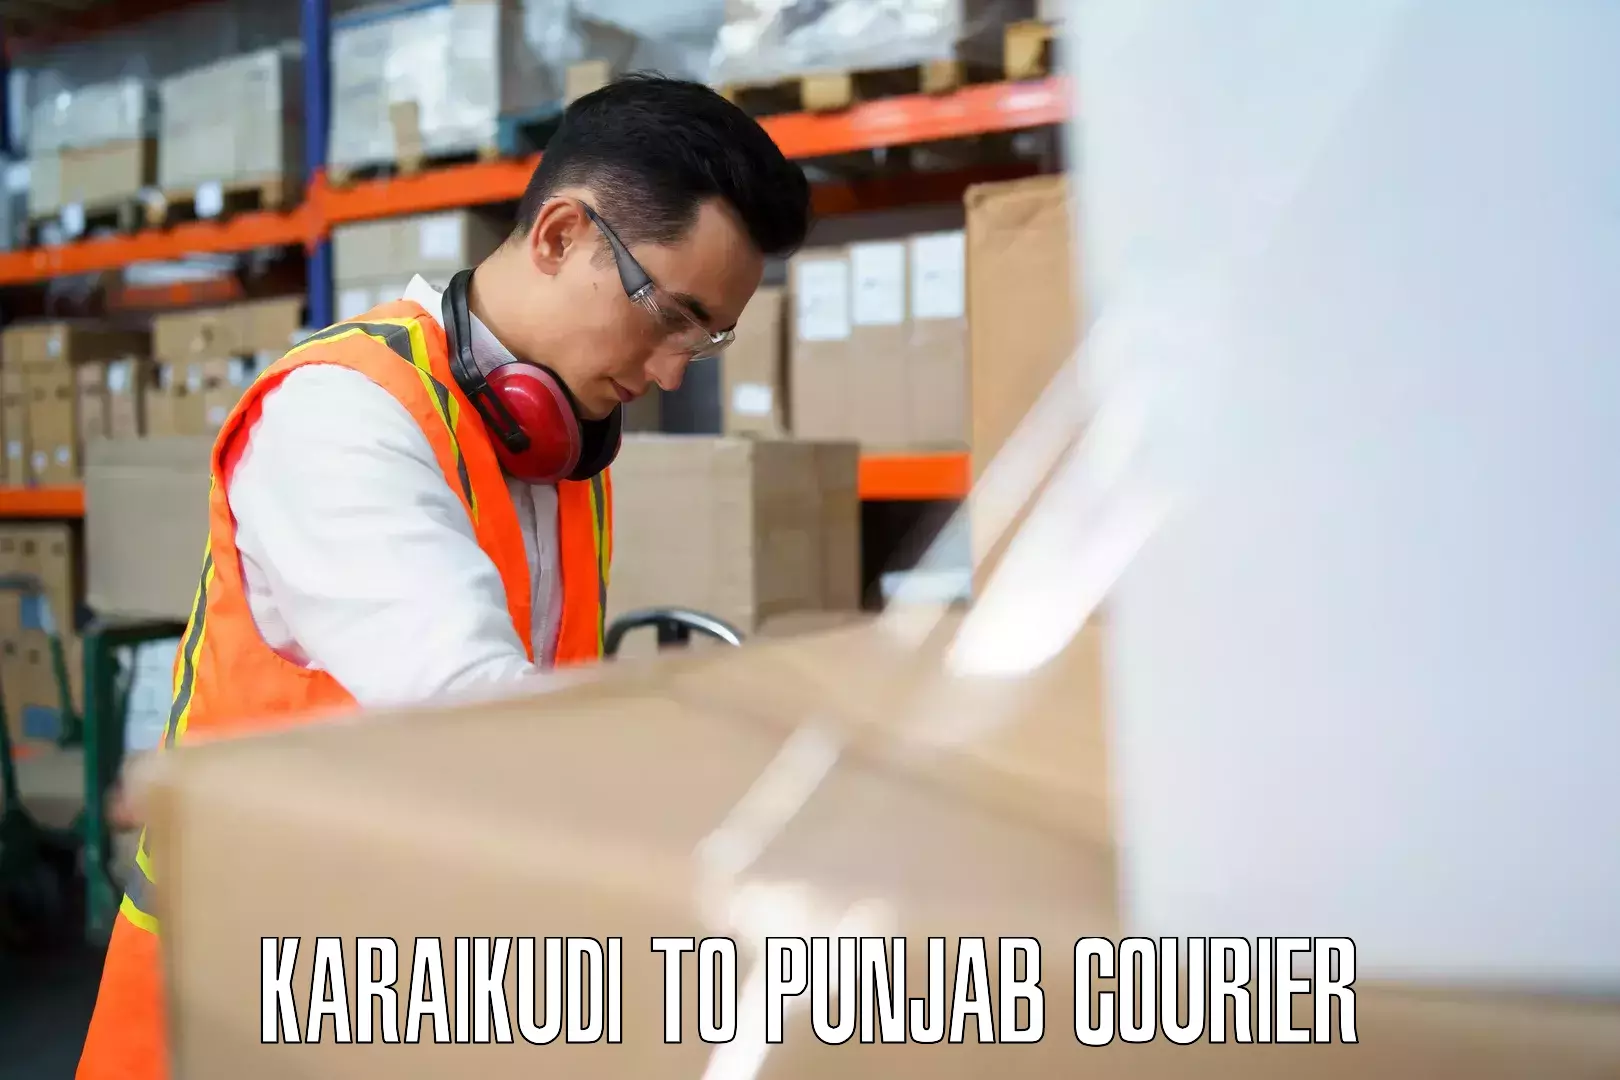 Baggage shipping advice Karaikudi to Rupnagar